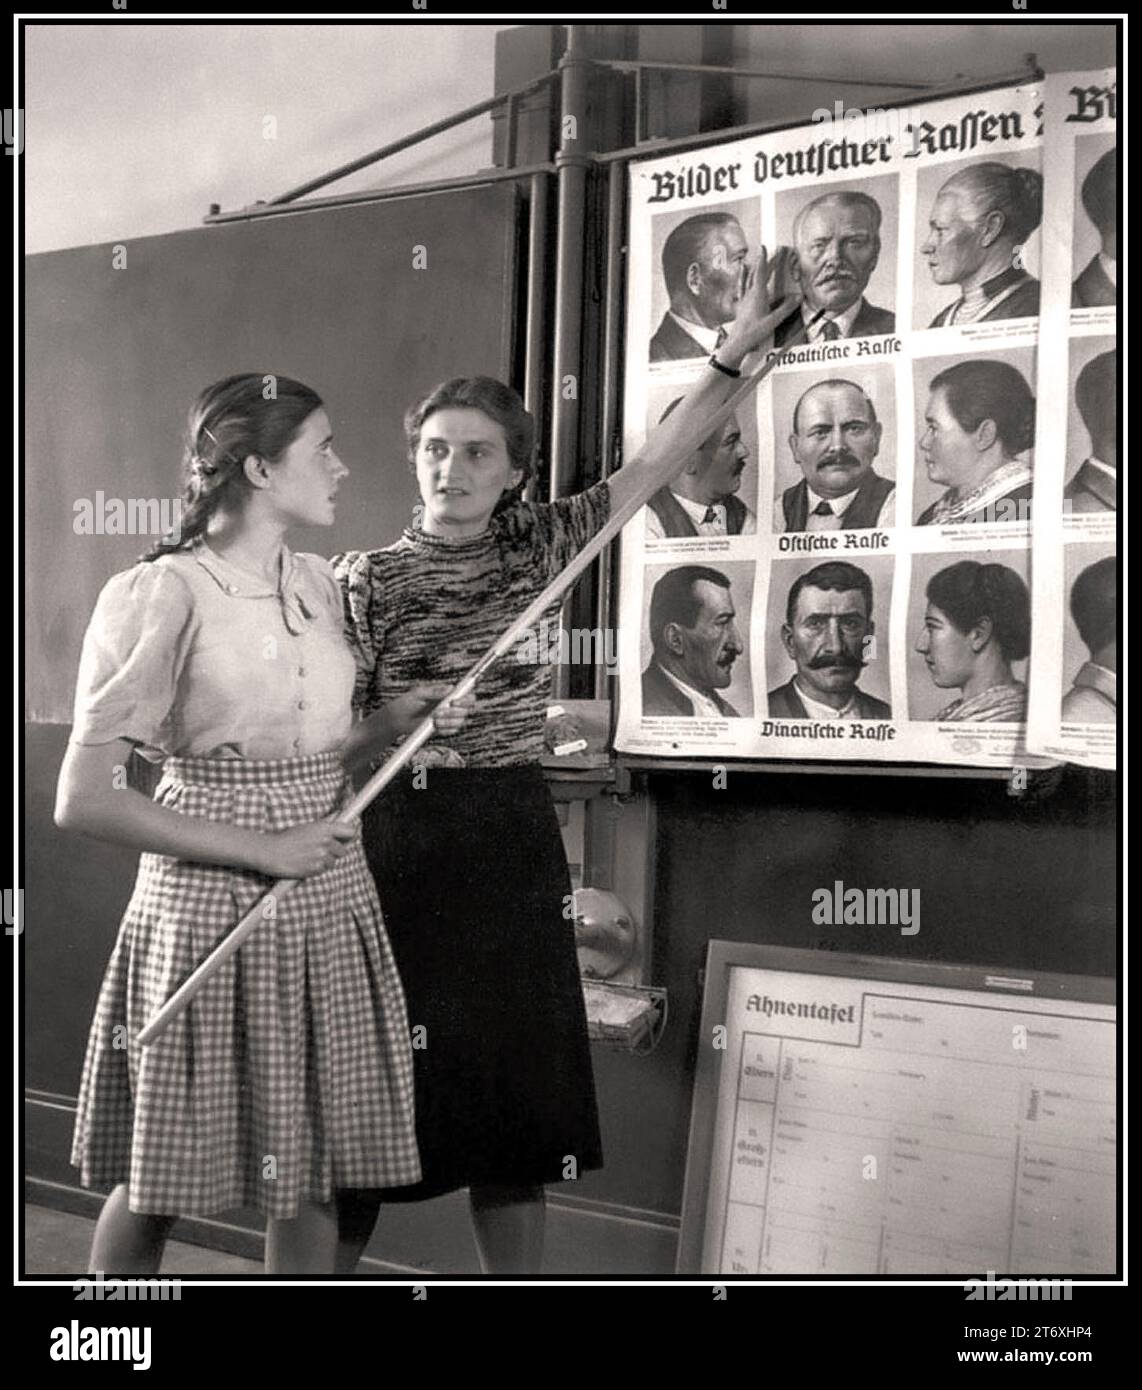 Lezioni di profilazione della propaganda razziale nazista, con l'insegnante che indica una varietà di ritratti tedeschi, intitolati "immagini di razze tedesche" della Germania nazista degli anni '1930 razzista razzista razzista razzista razzista nazista profilando l'ideologia dell'educazione radicalizzazione dell'estremismo Foto Stock